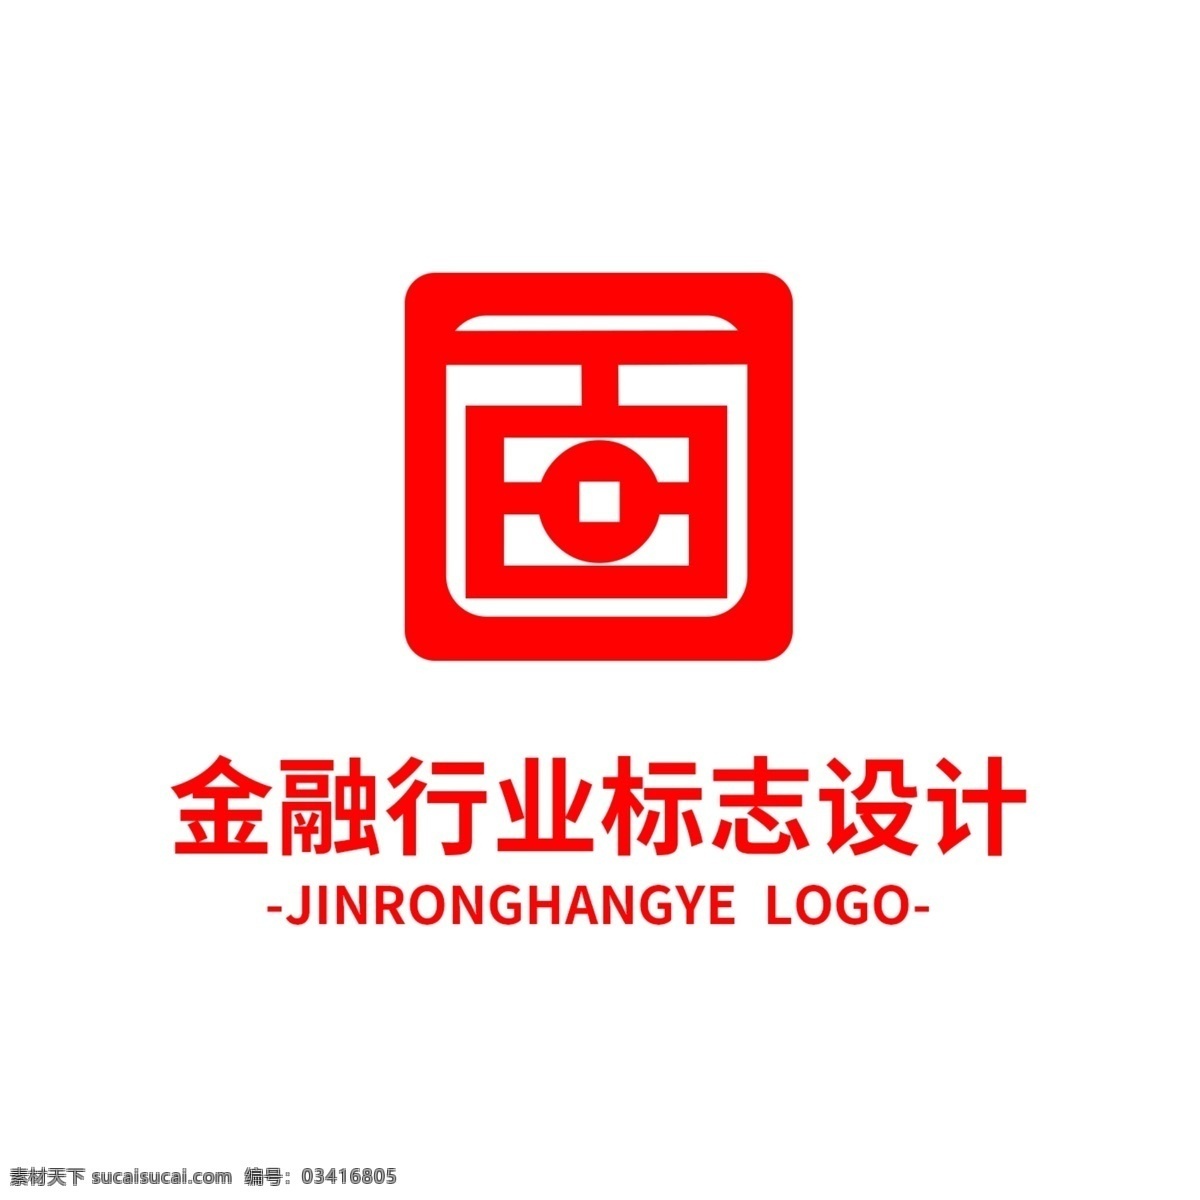 金融 行业 标志设计 logo 标志 行业标识 jijin 理财